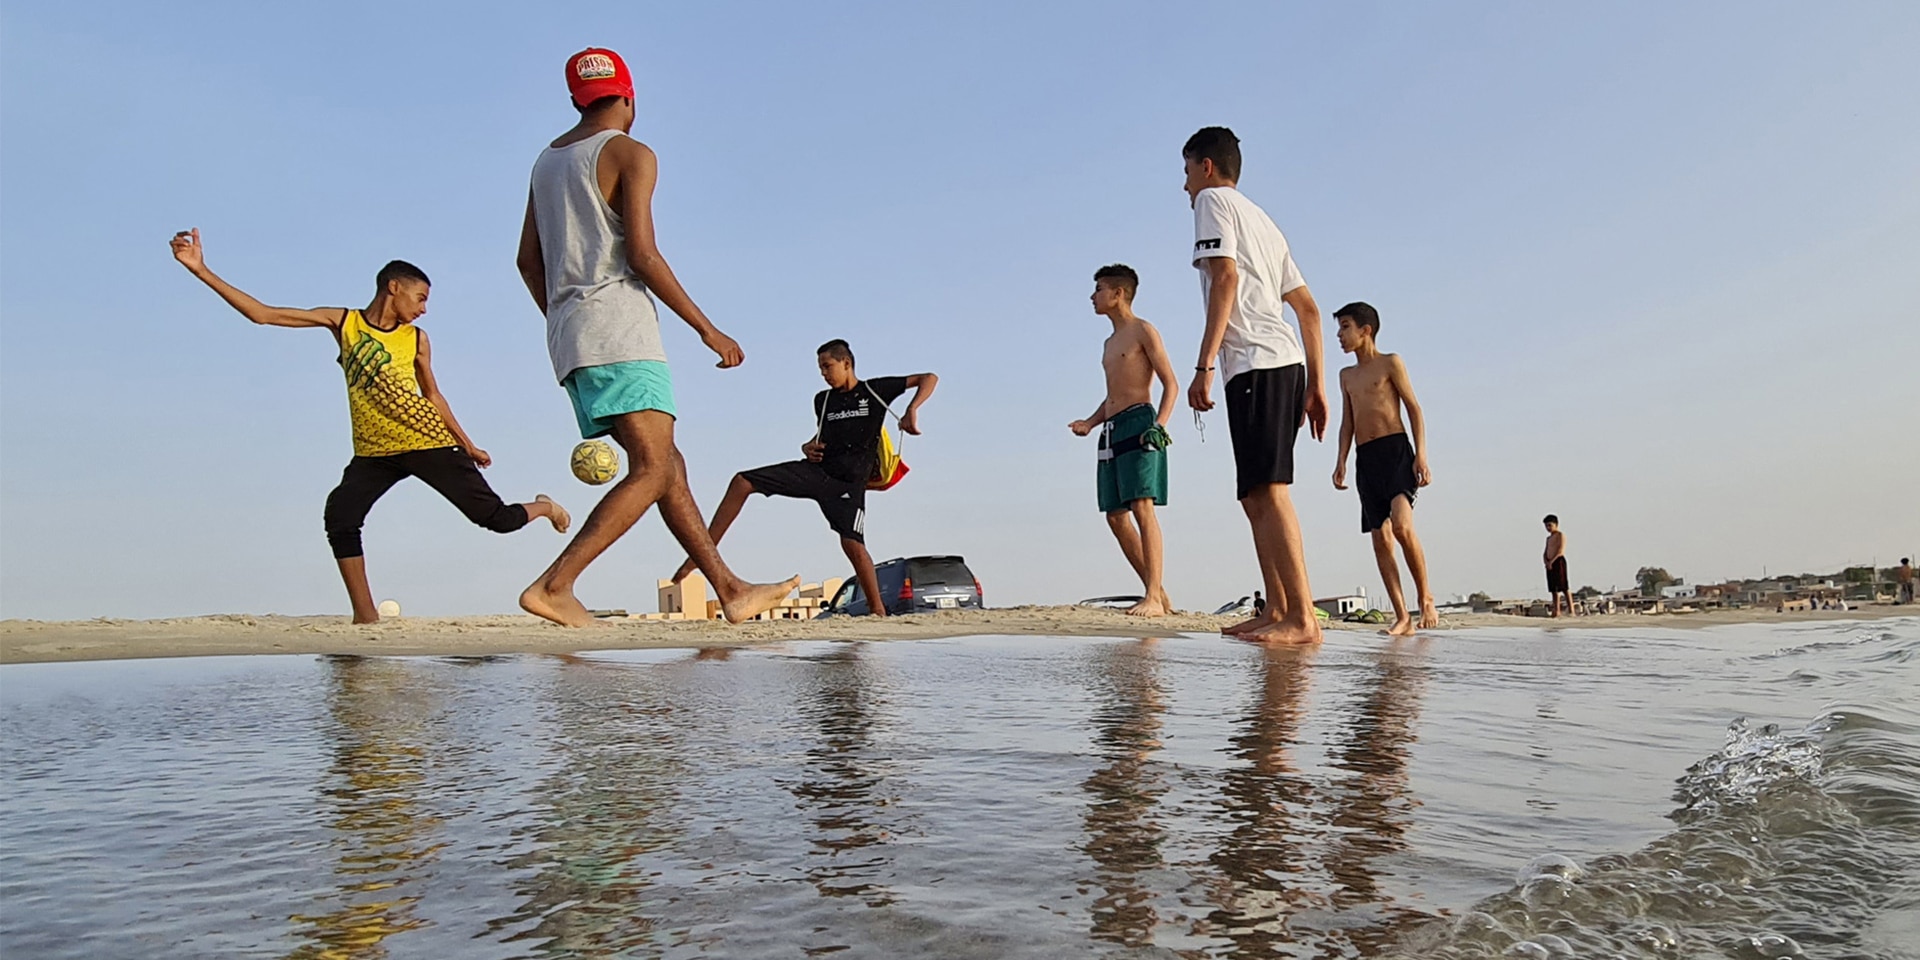  Alcuni giovani giocano a calcio su una spiaggia di Garabulli, a circa 70 km dalla capitale Tripoli.